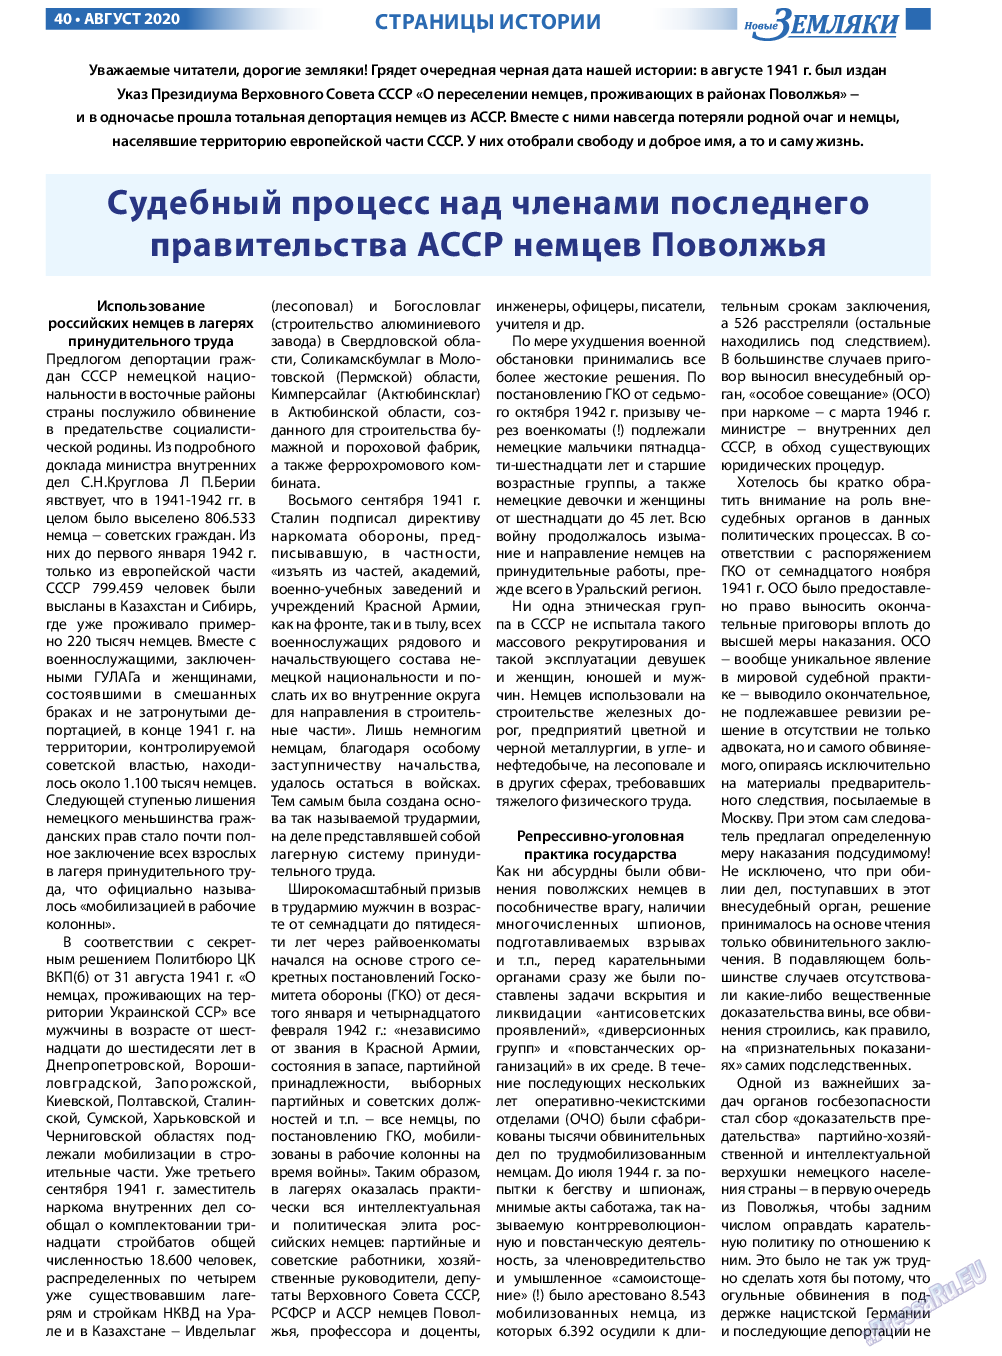 Новые Земляки (газета). 2020 год, номер 8, стр. 40